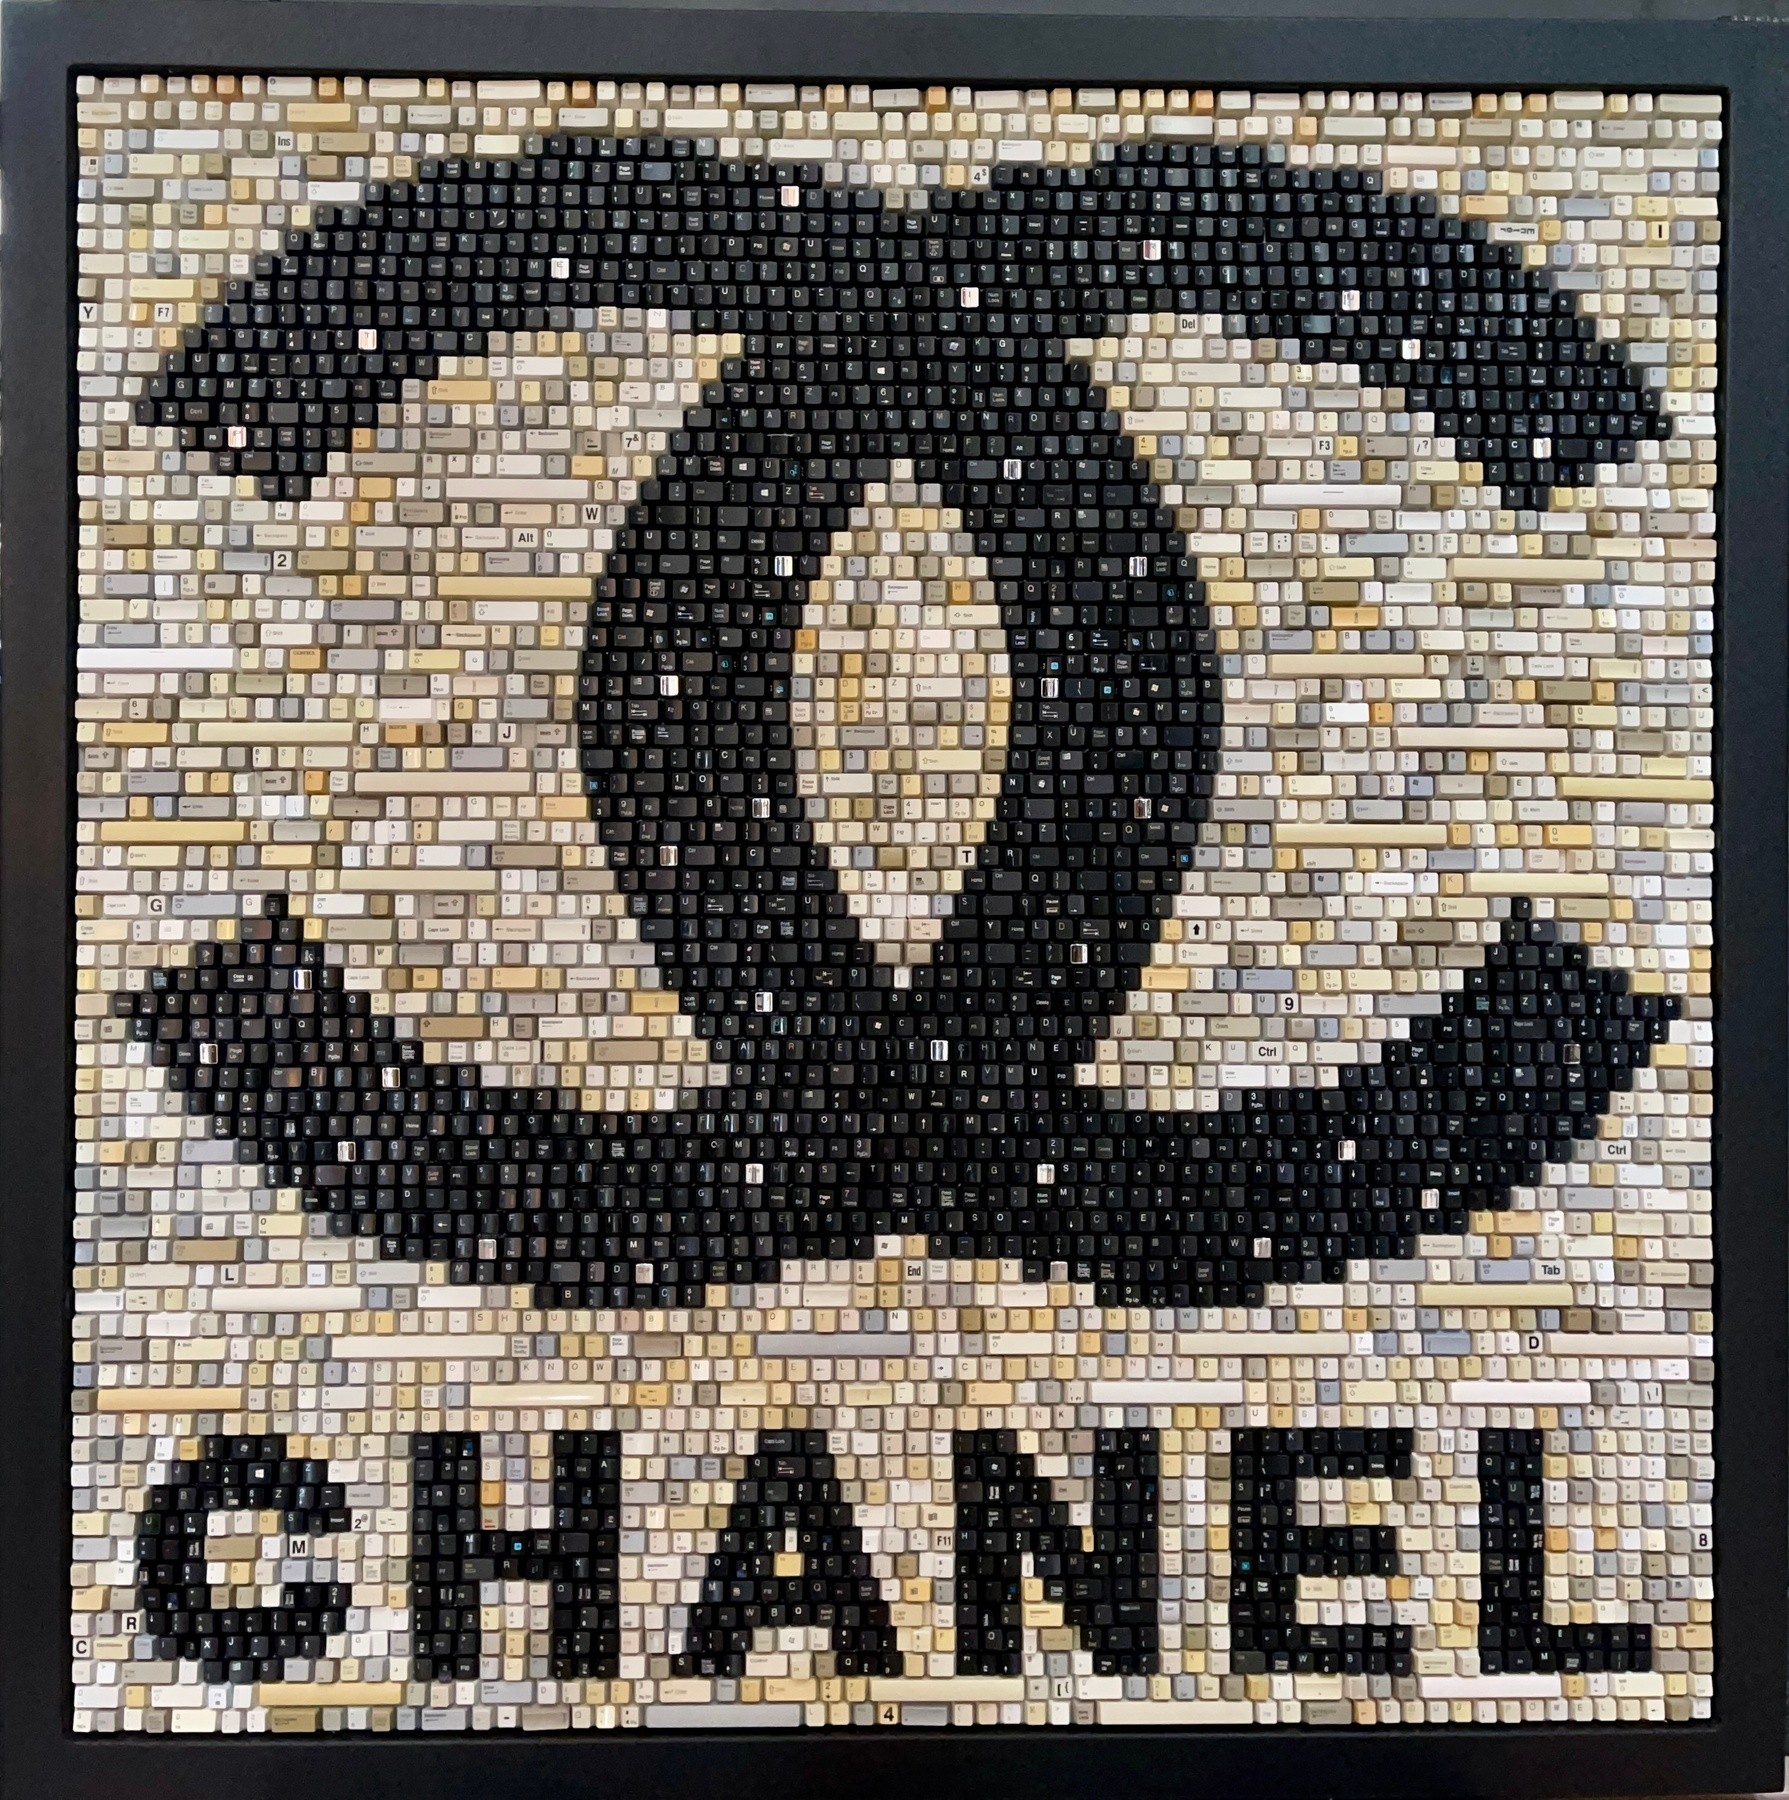 Coco Chanel Mixed Media for Sale - Fine Art America